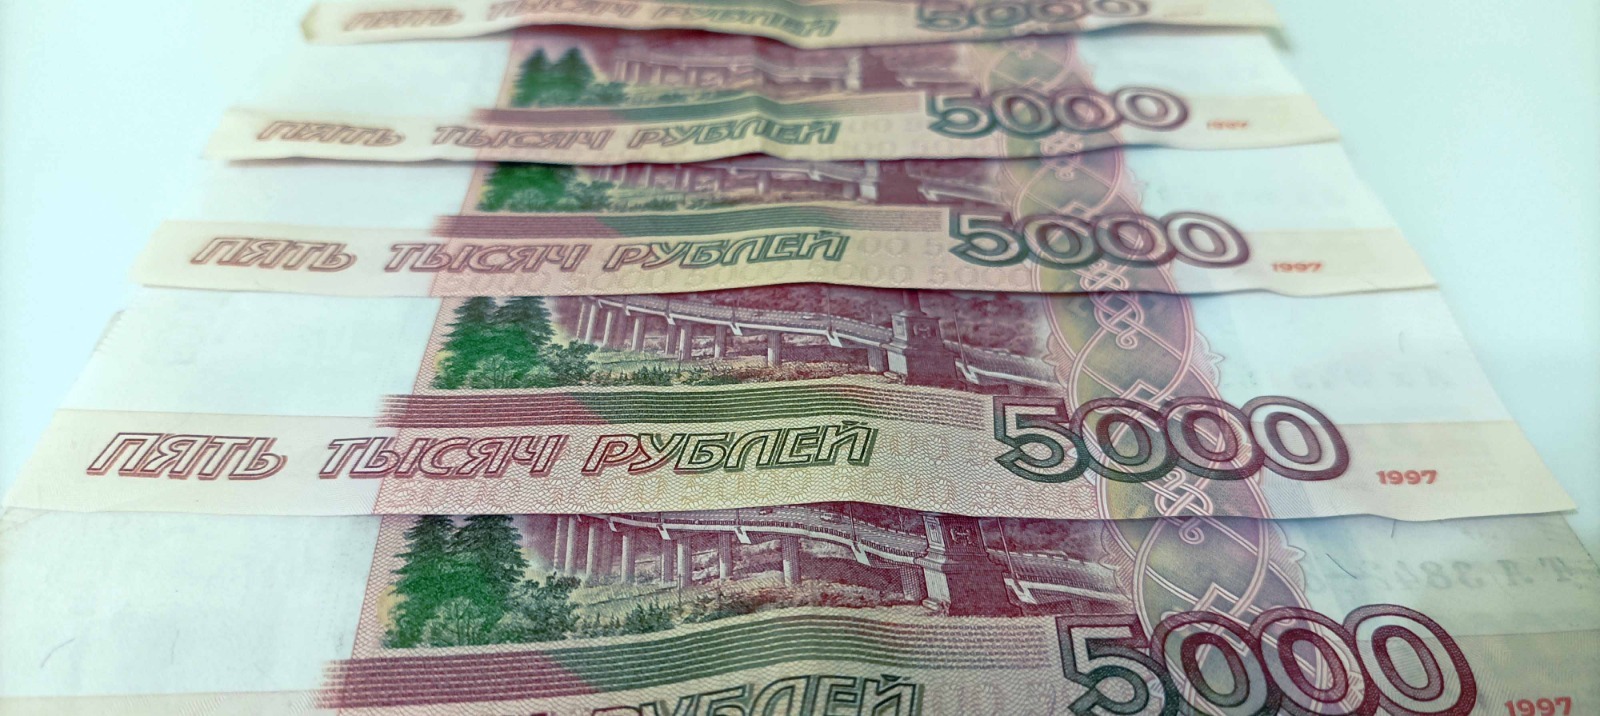 Артур СМОЛОВ  В Башкирии инвестиции в экономику превысили 500 миллиардов рублей